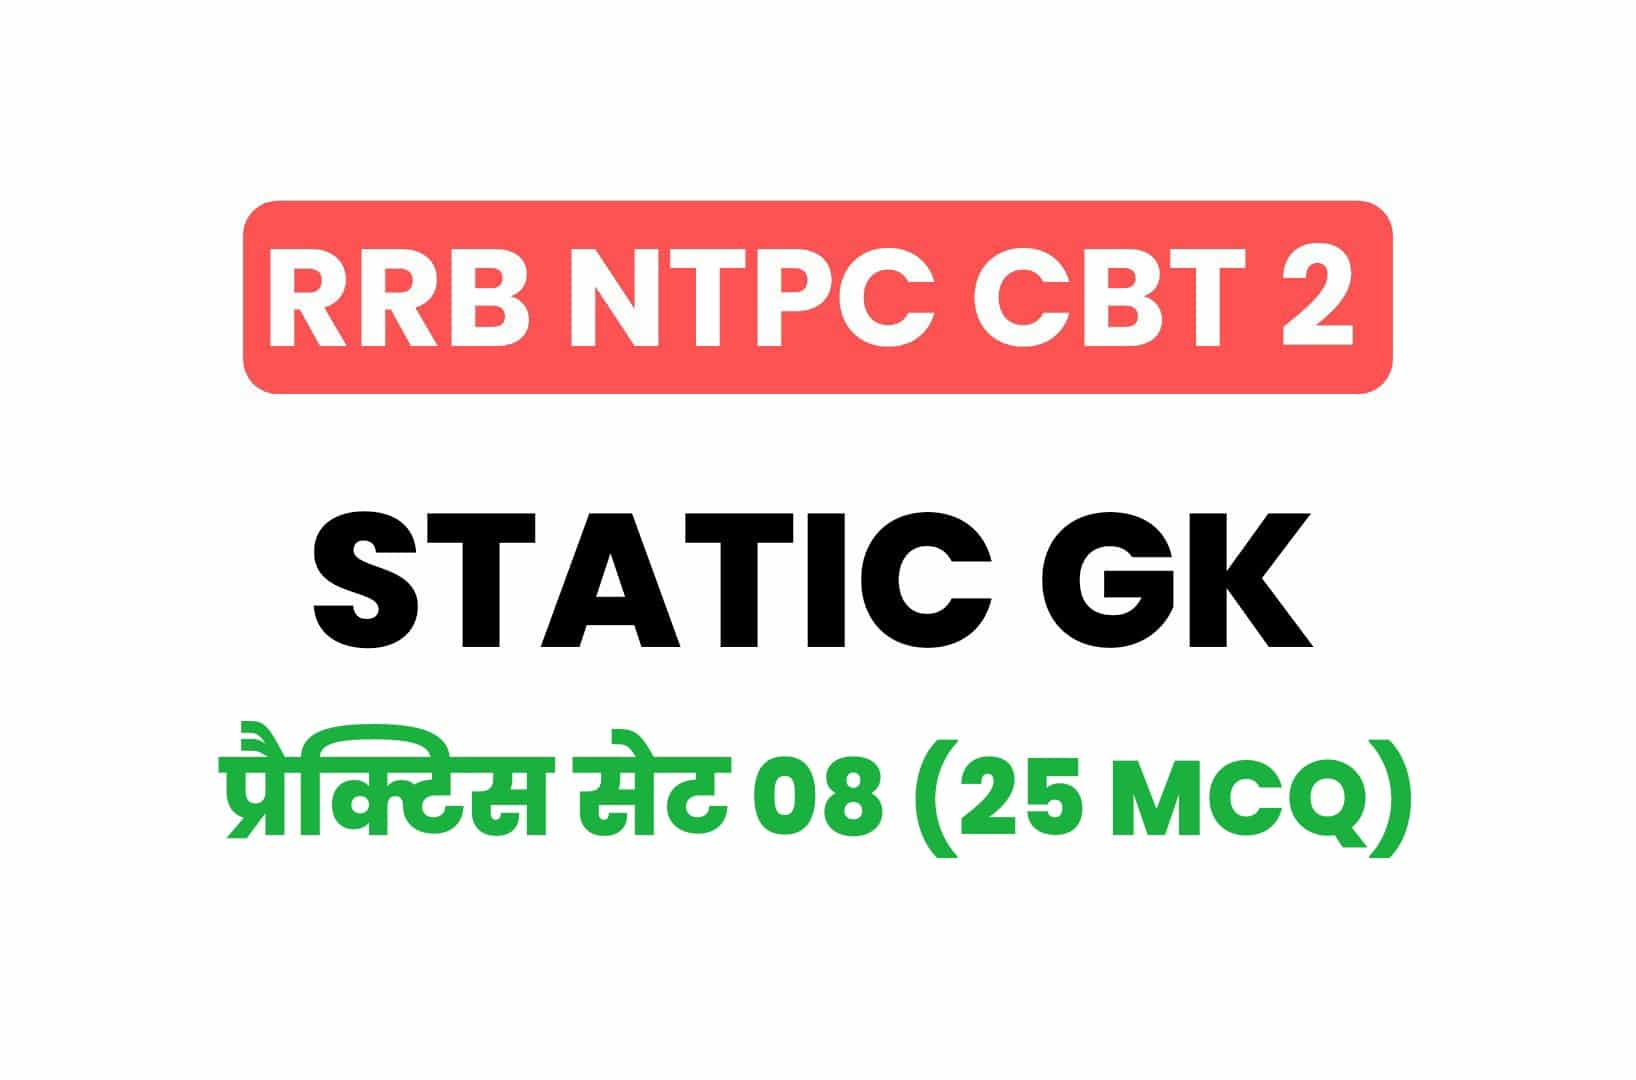 RRB NTPC CBT 2 Static GK प्रैक्टिस सेट 08: परीक्षा में पूछे गये महत्वपूर्ण प्रश्नो का संग्रह, जरूर पढ़ें